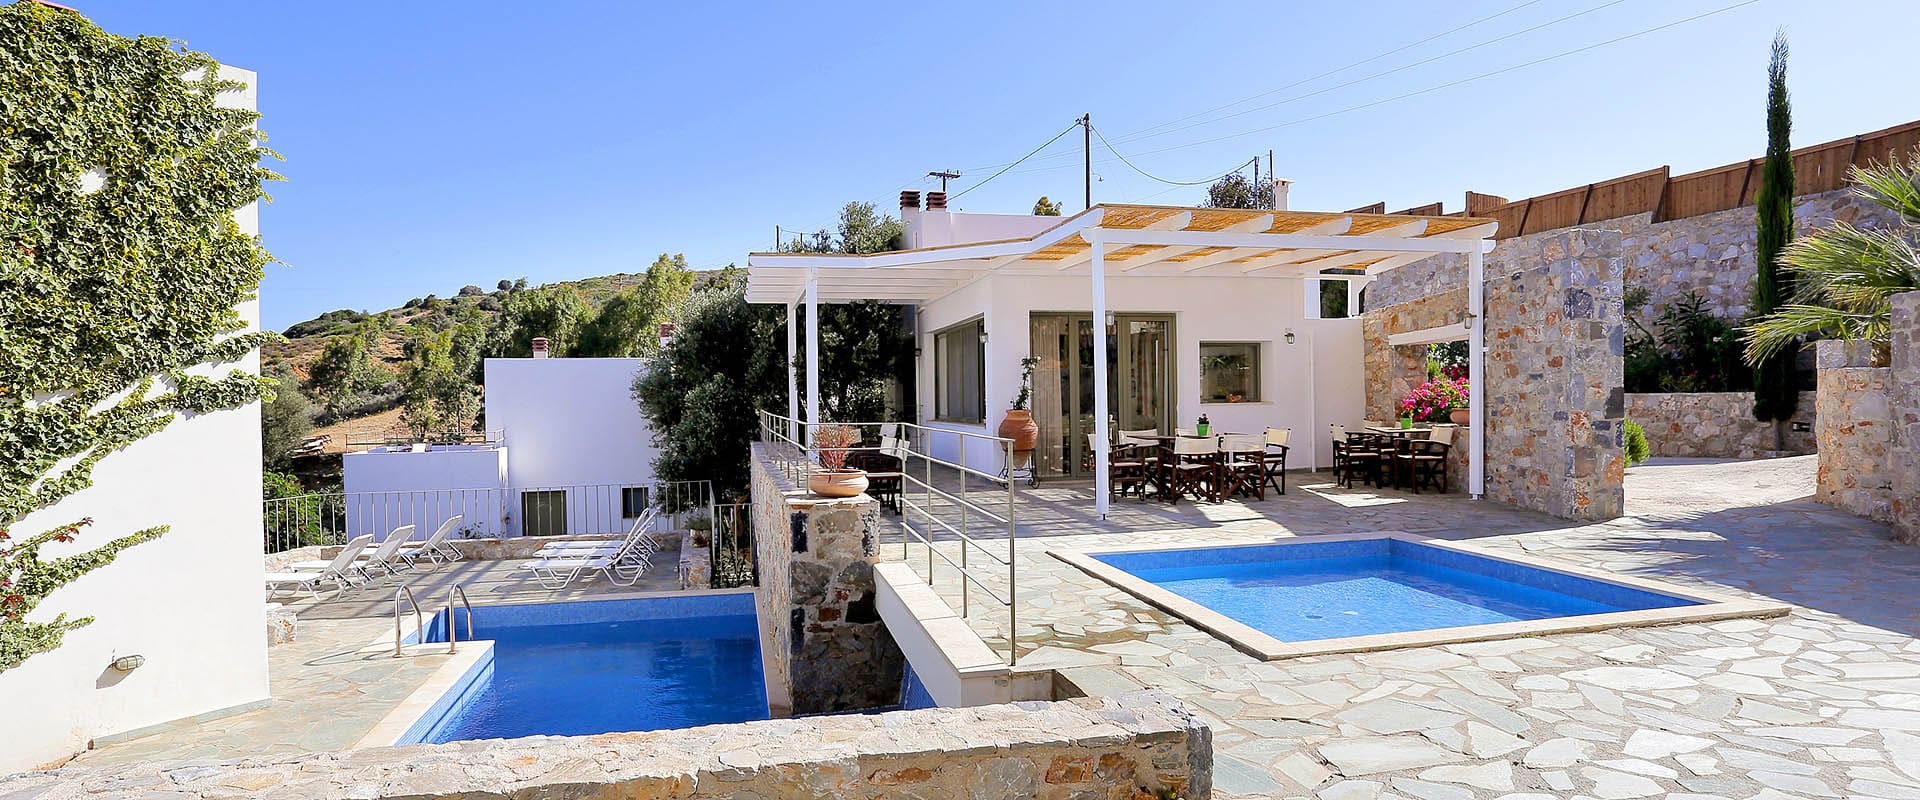 hotel per vacanze ecoturismo sull'isola di Creta in Grecia